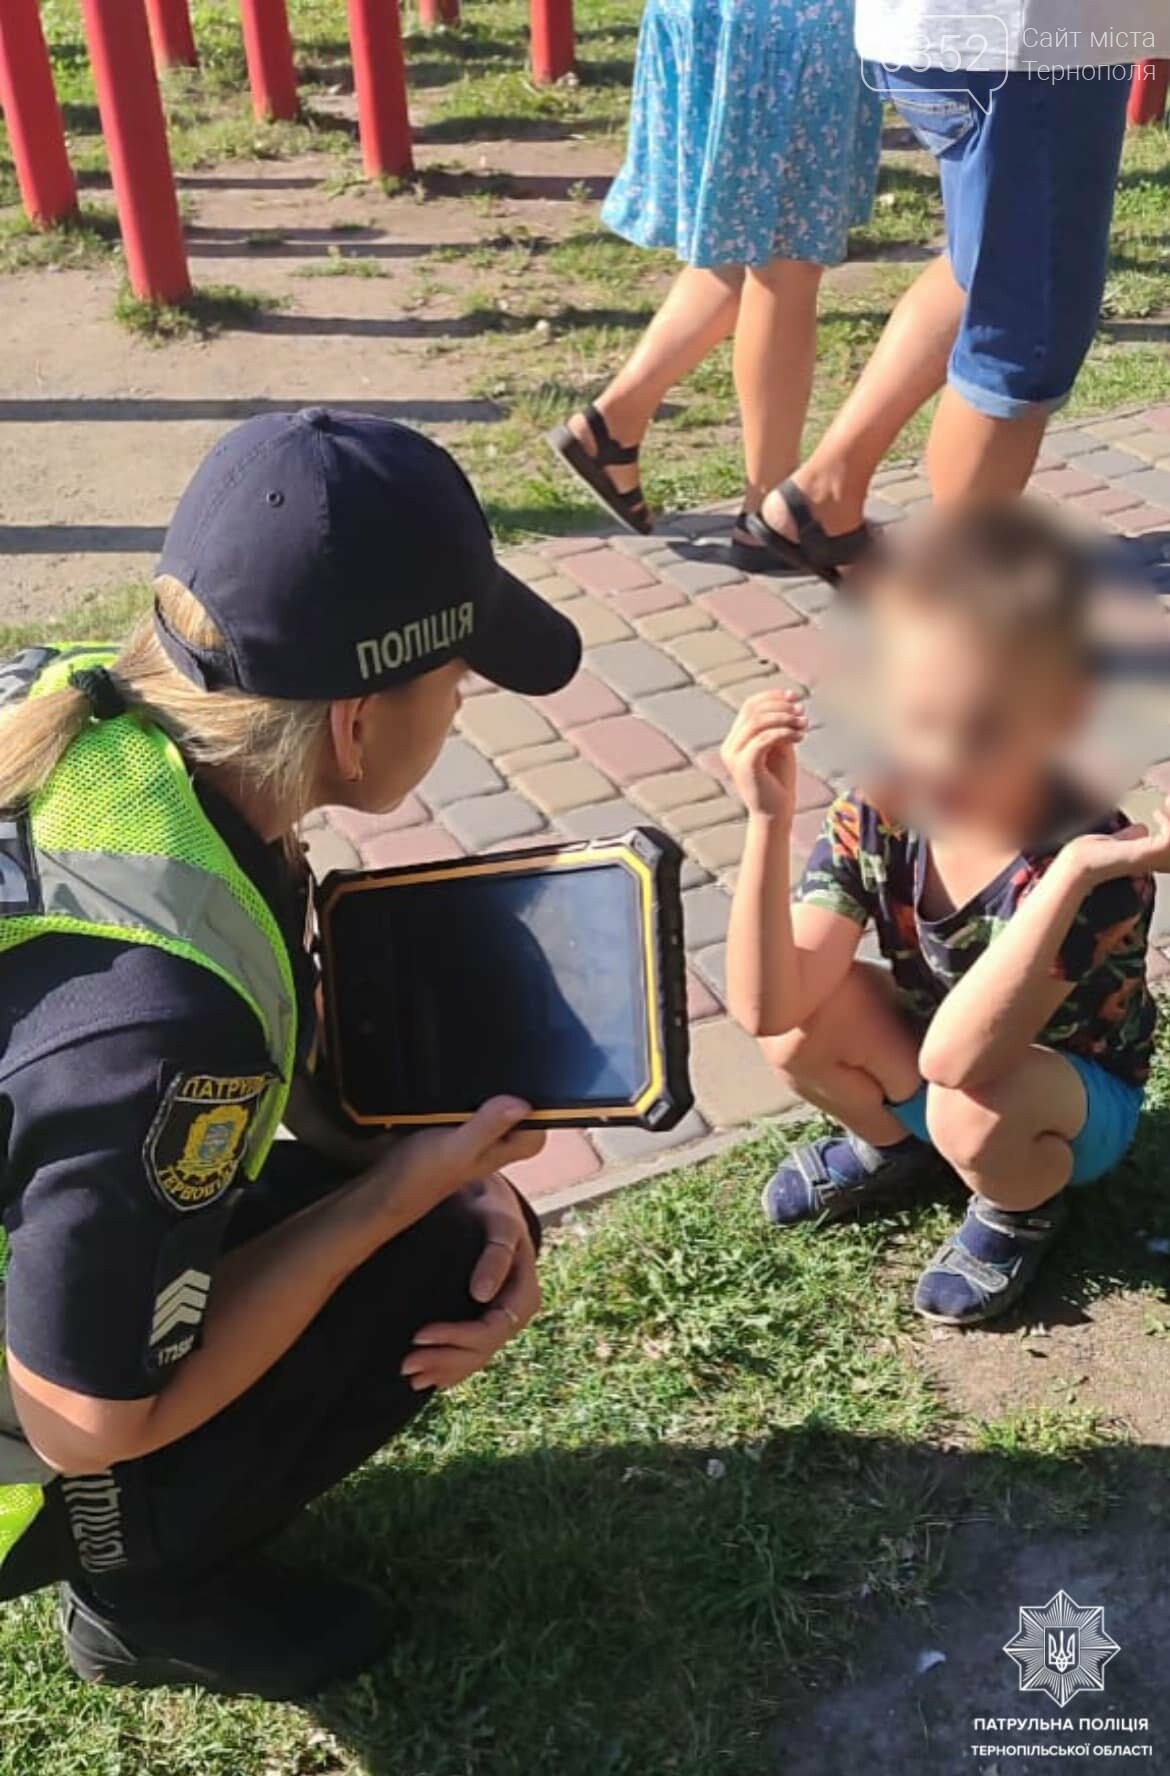 "Допоможіть, благаю, пропав син": у Тернополі у парку загубився 6-річний хлопчик